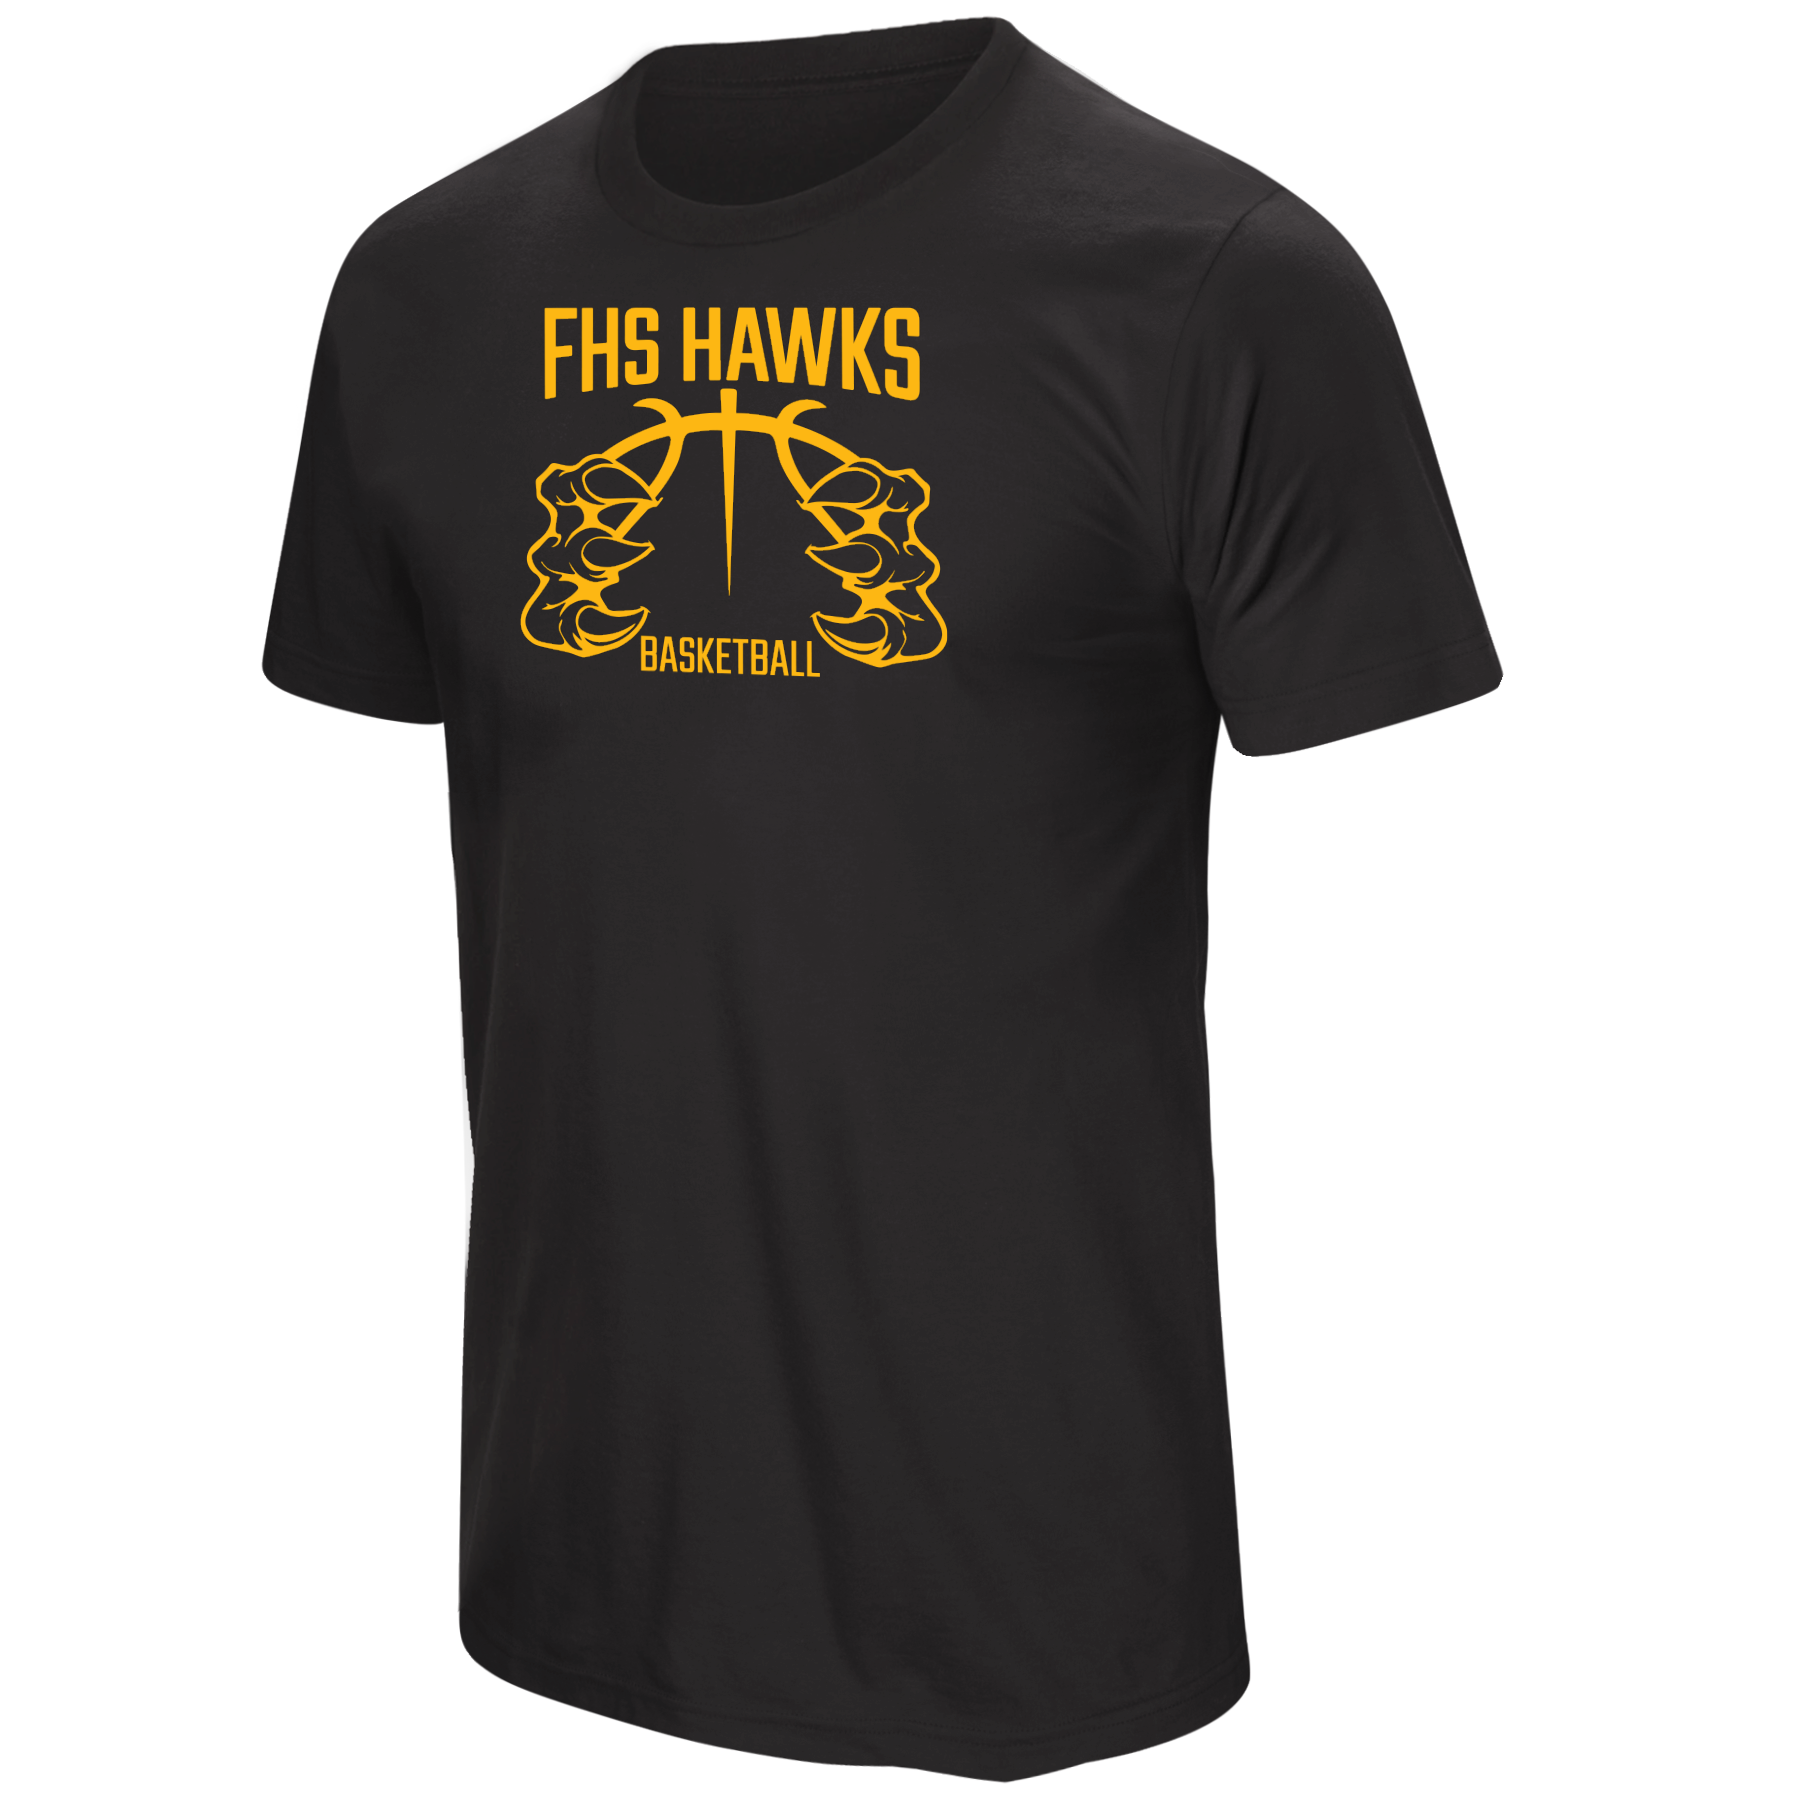 FHS Hawks Basketball Talon Black Tee